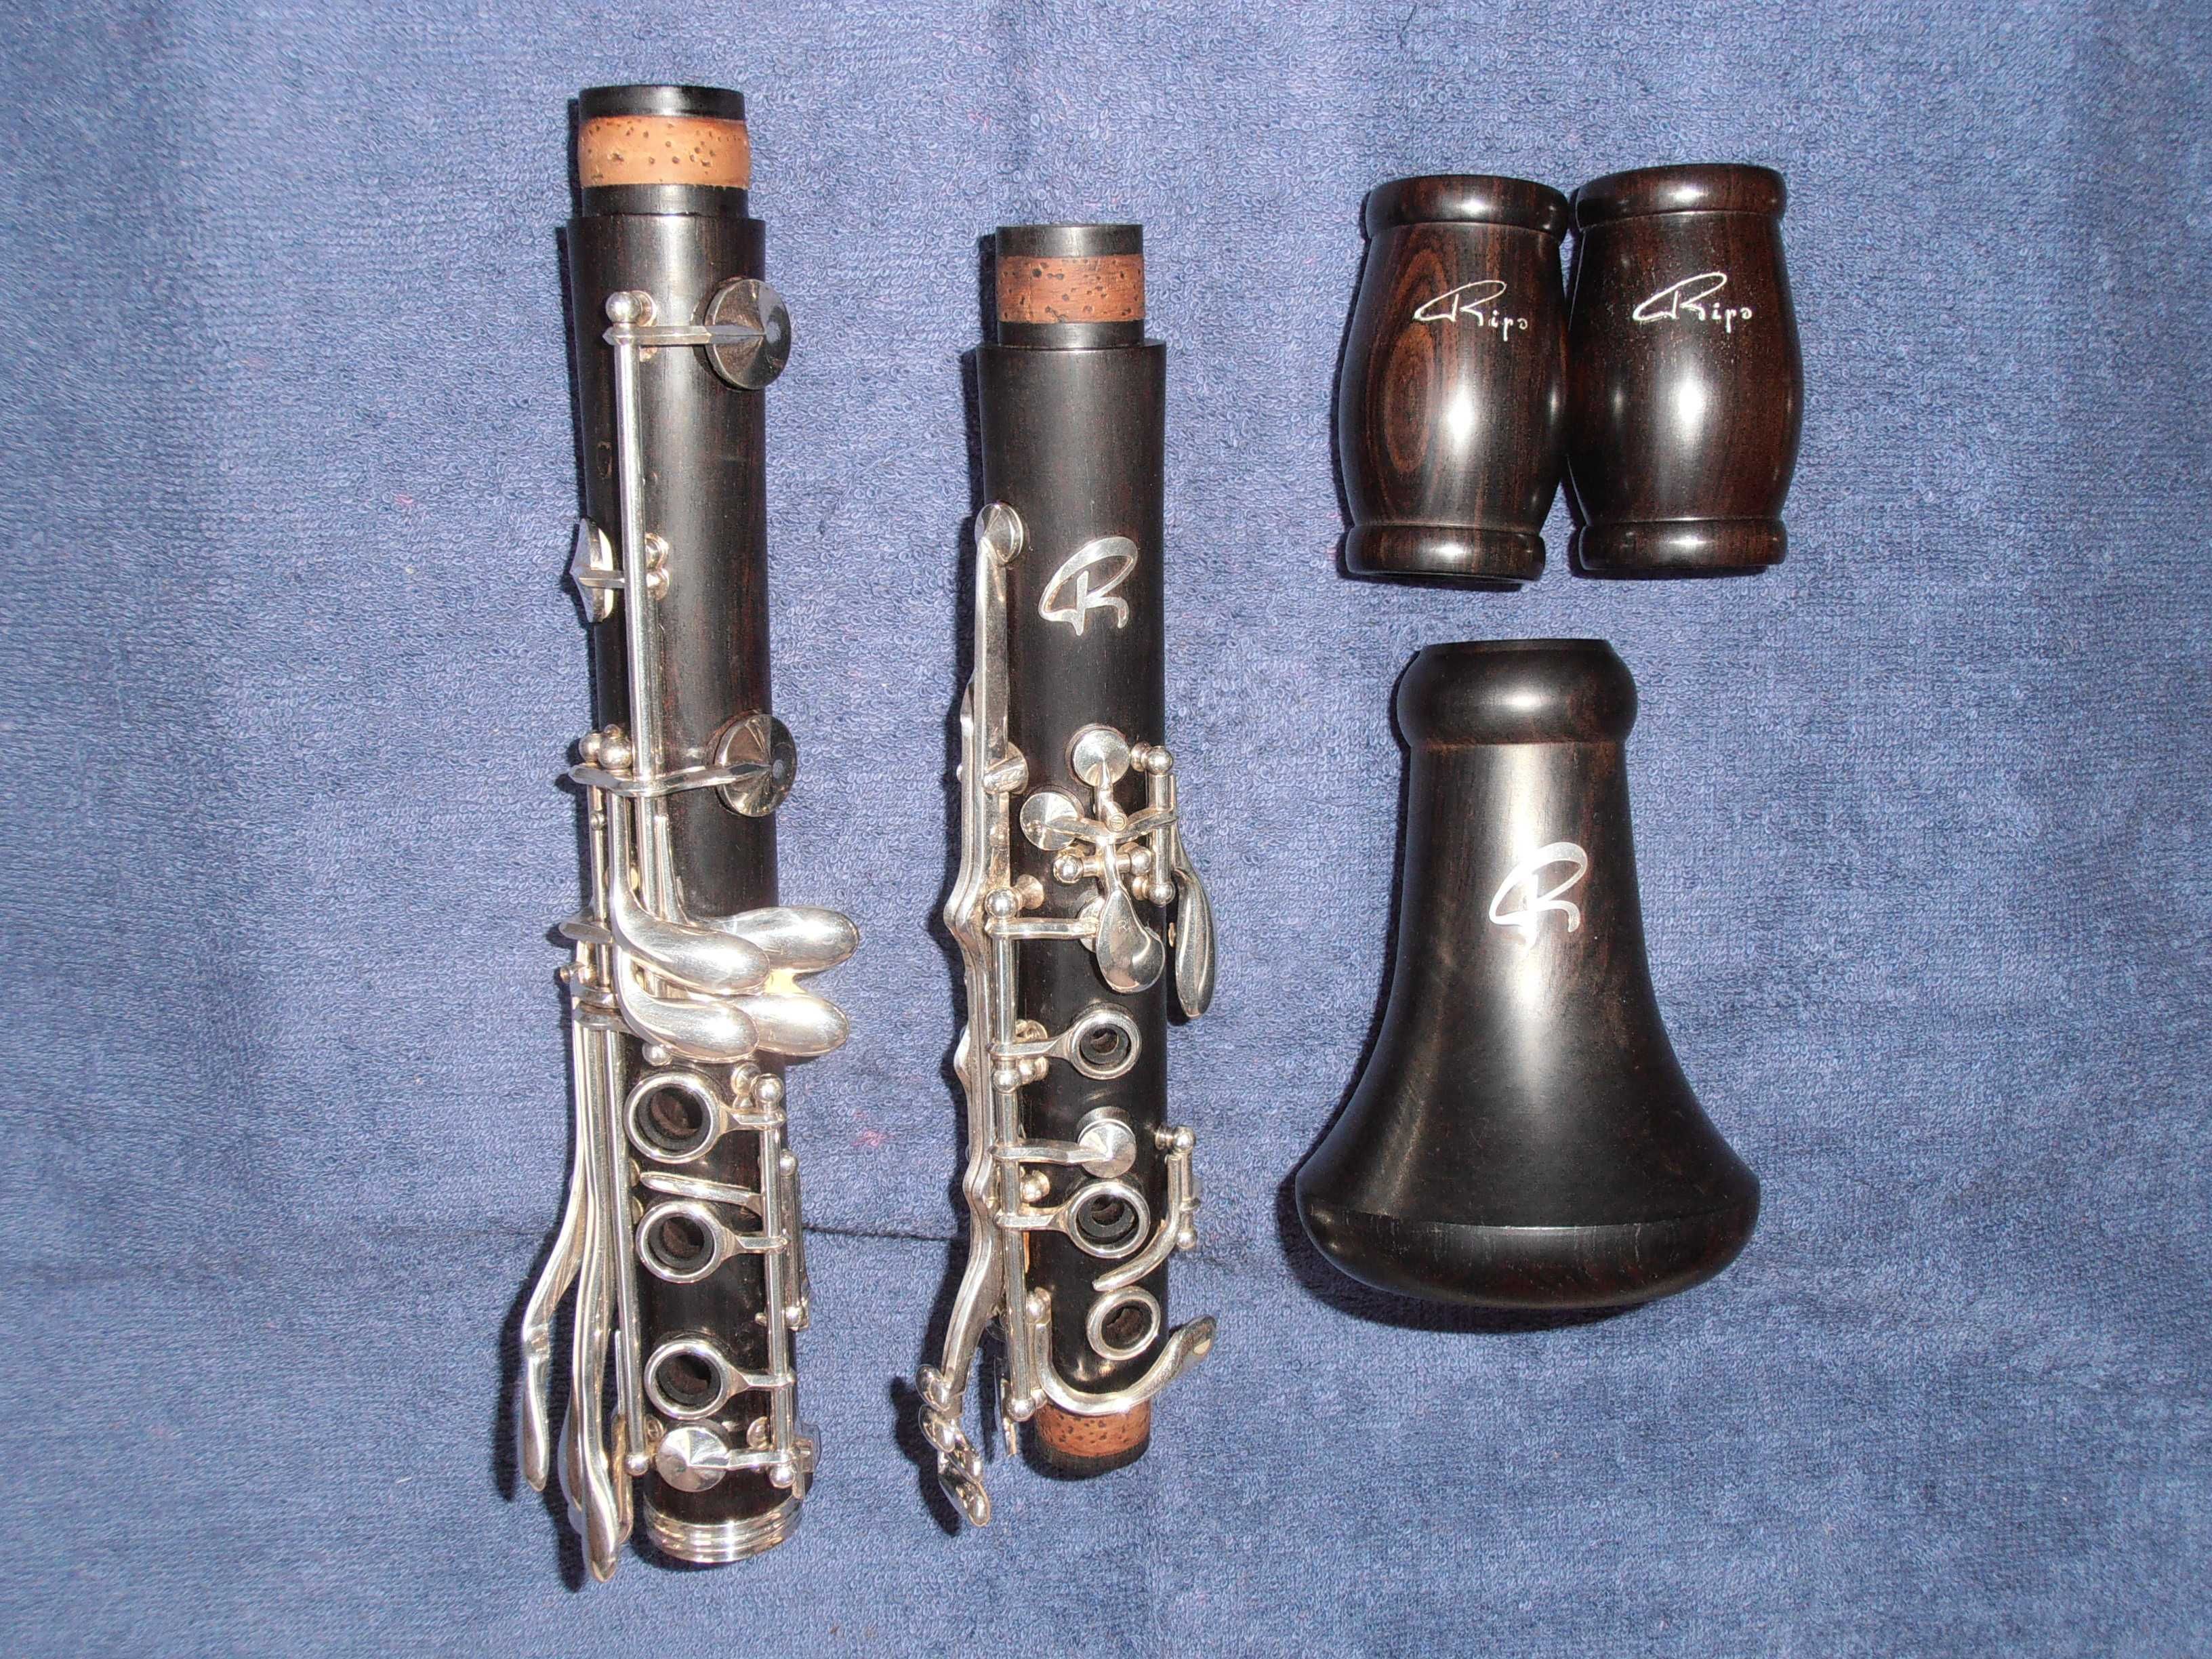 Clarinetes Si-bemol e Lá : Ripa 310 RR e 312 RR (P. Beltramini) Itália